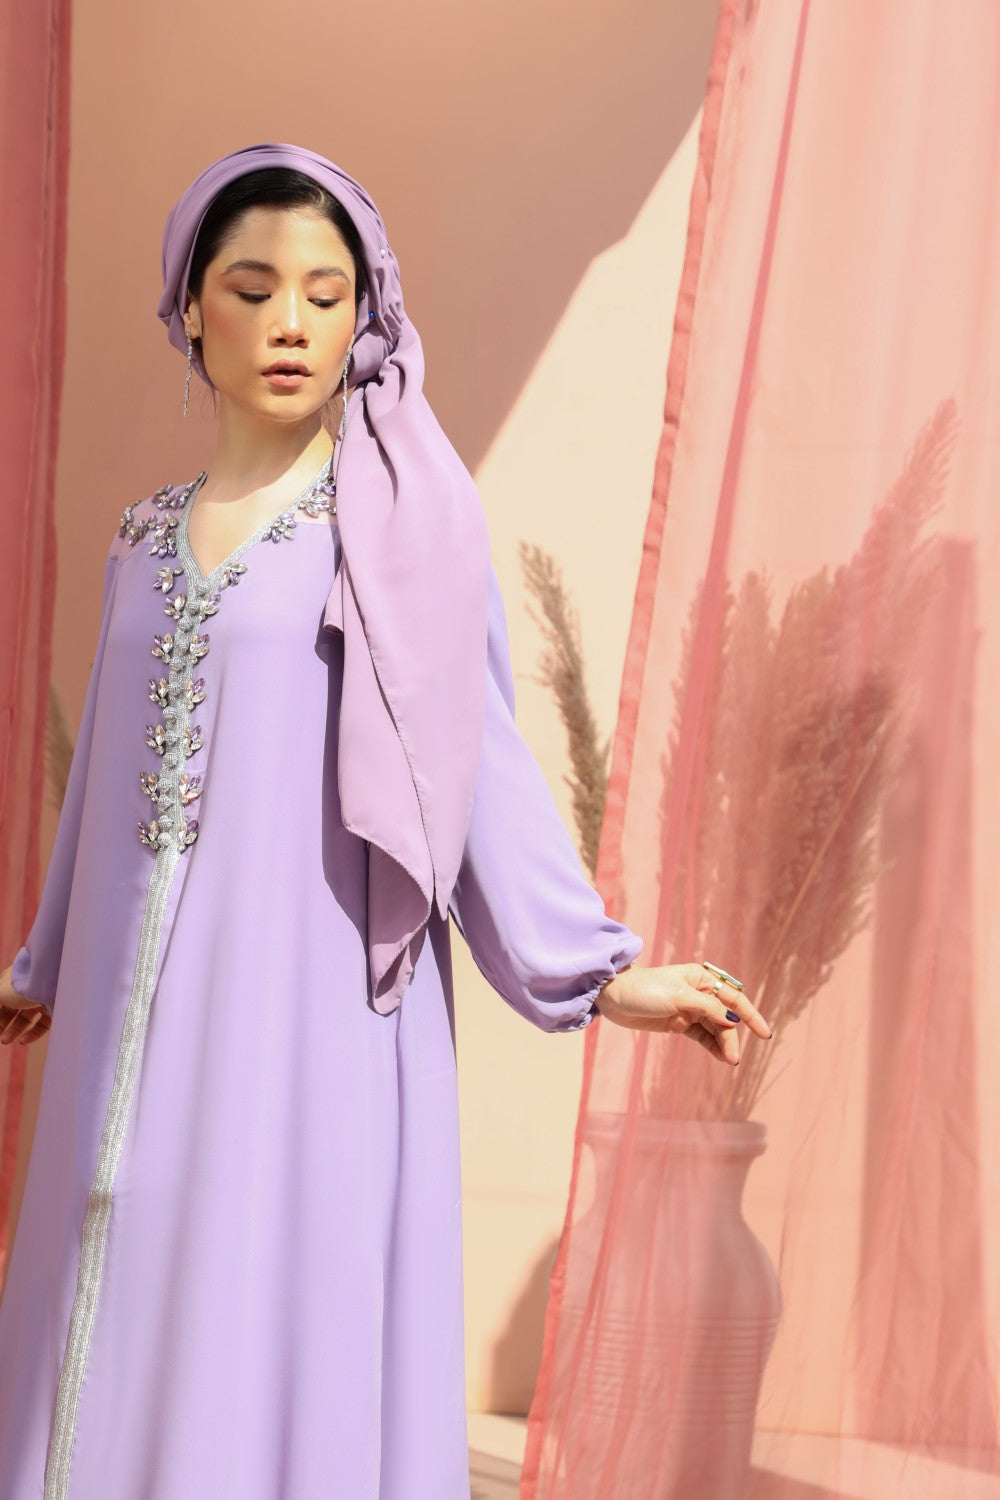 Serene-Lilac-Dress,Serene,Lilac,occassion abaya,modest wear abaya,smamz abaya